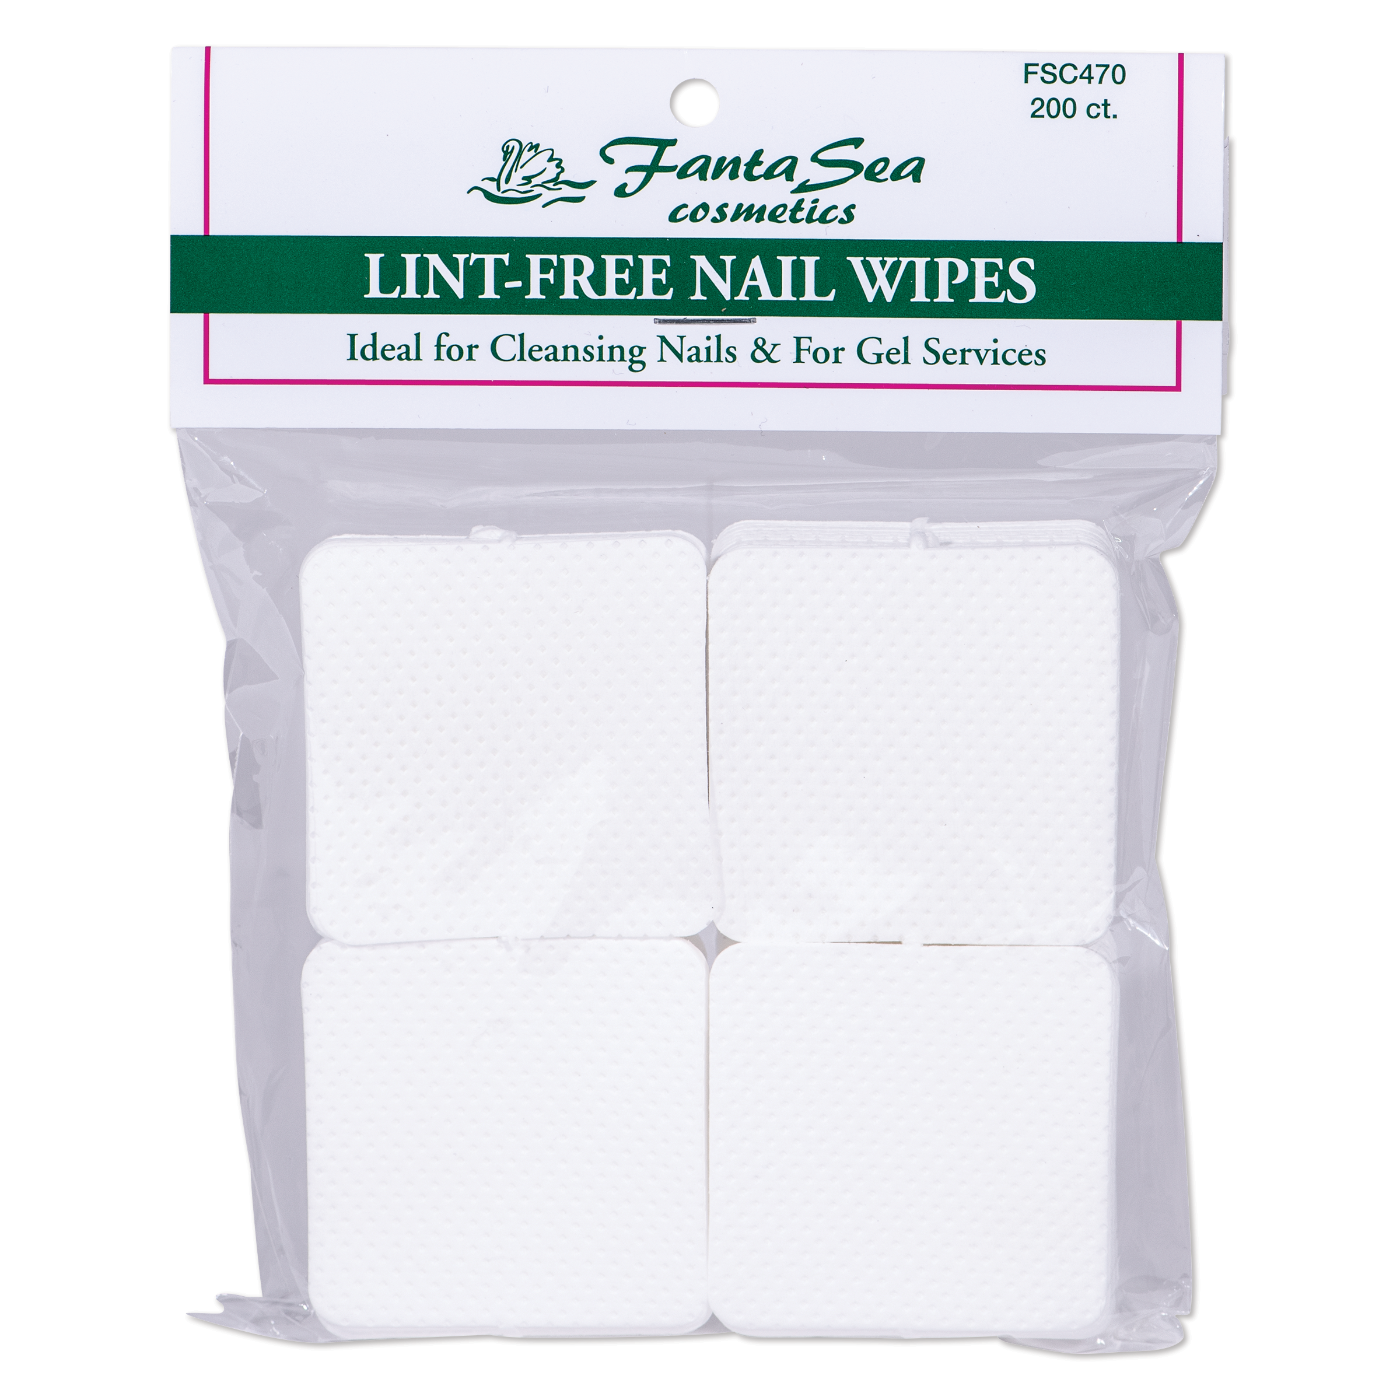 Nail Wipes, Lint-free - 2" x 2"